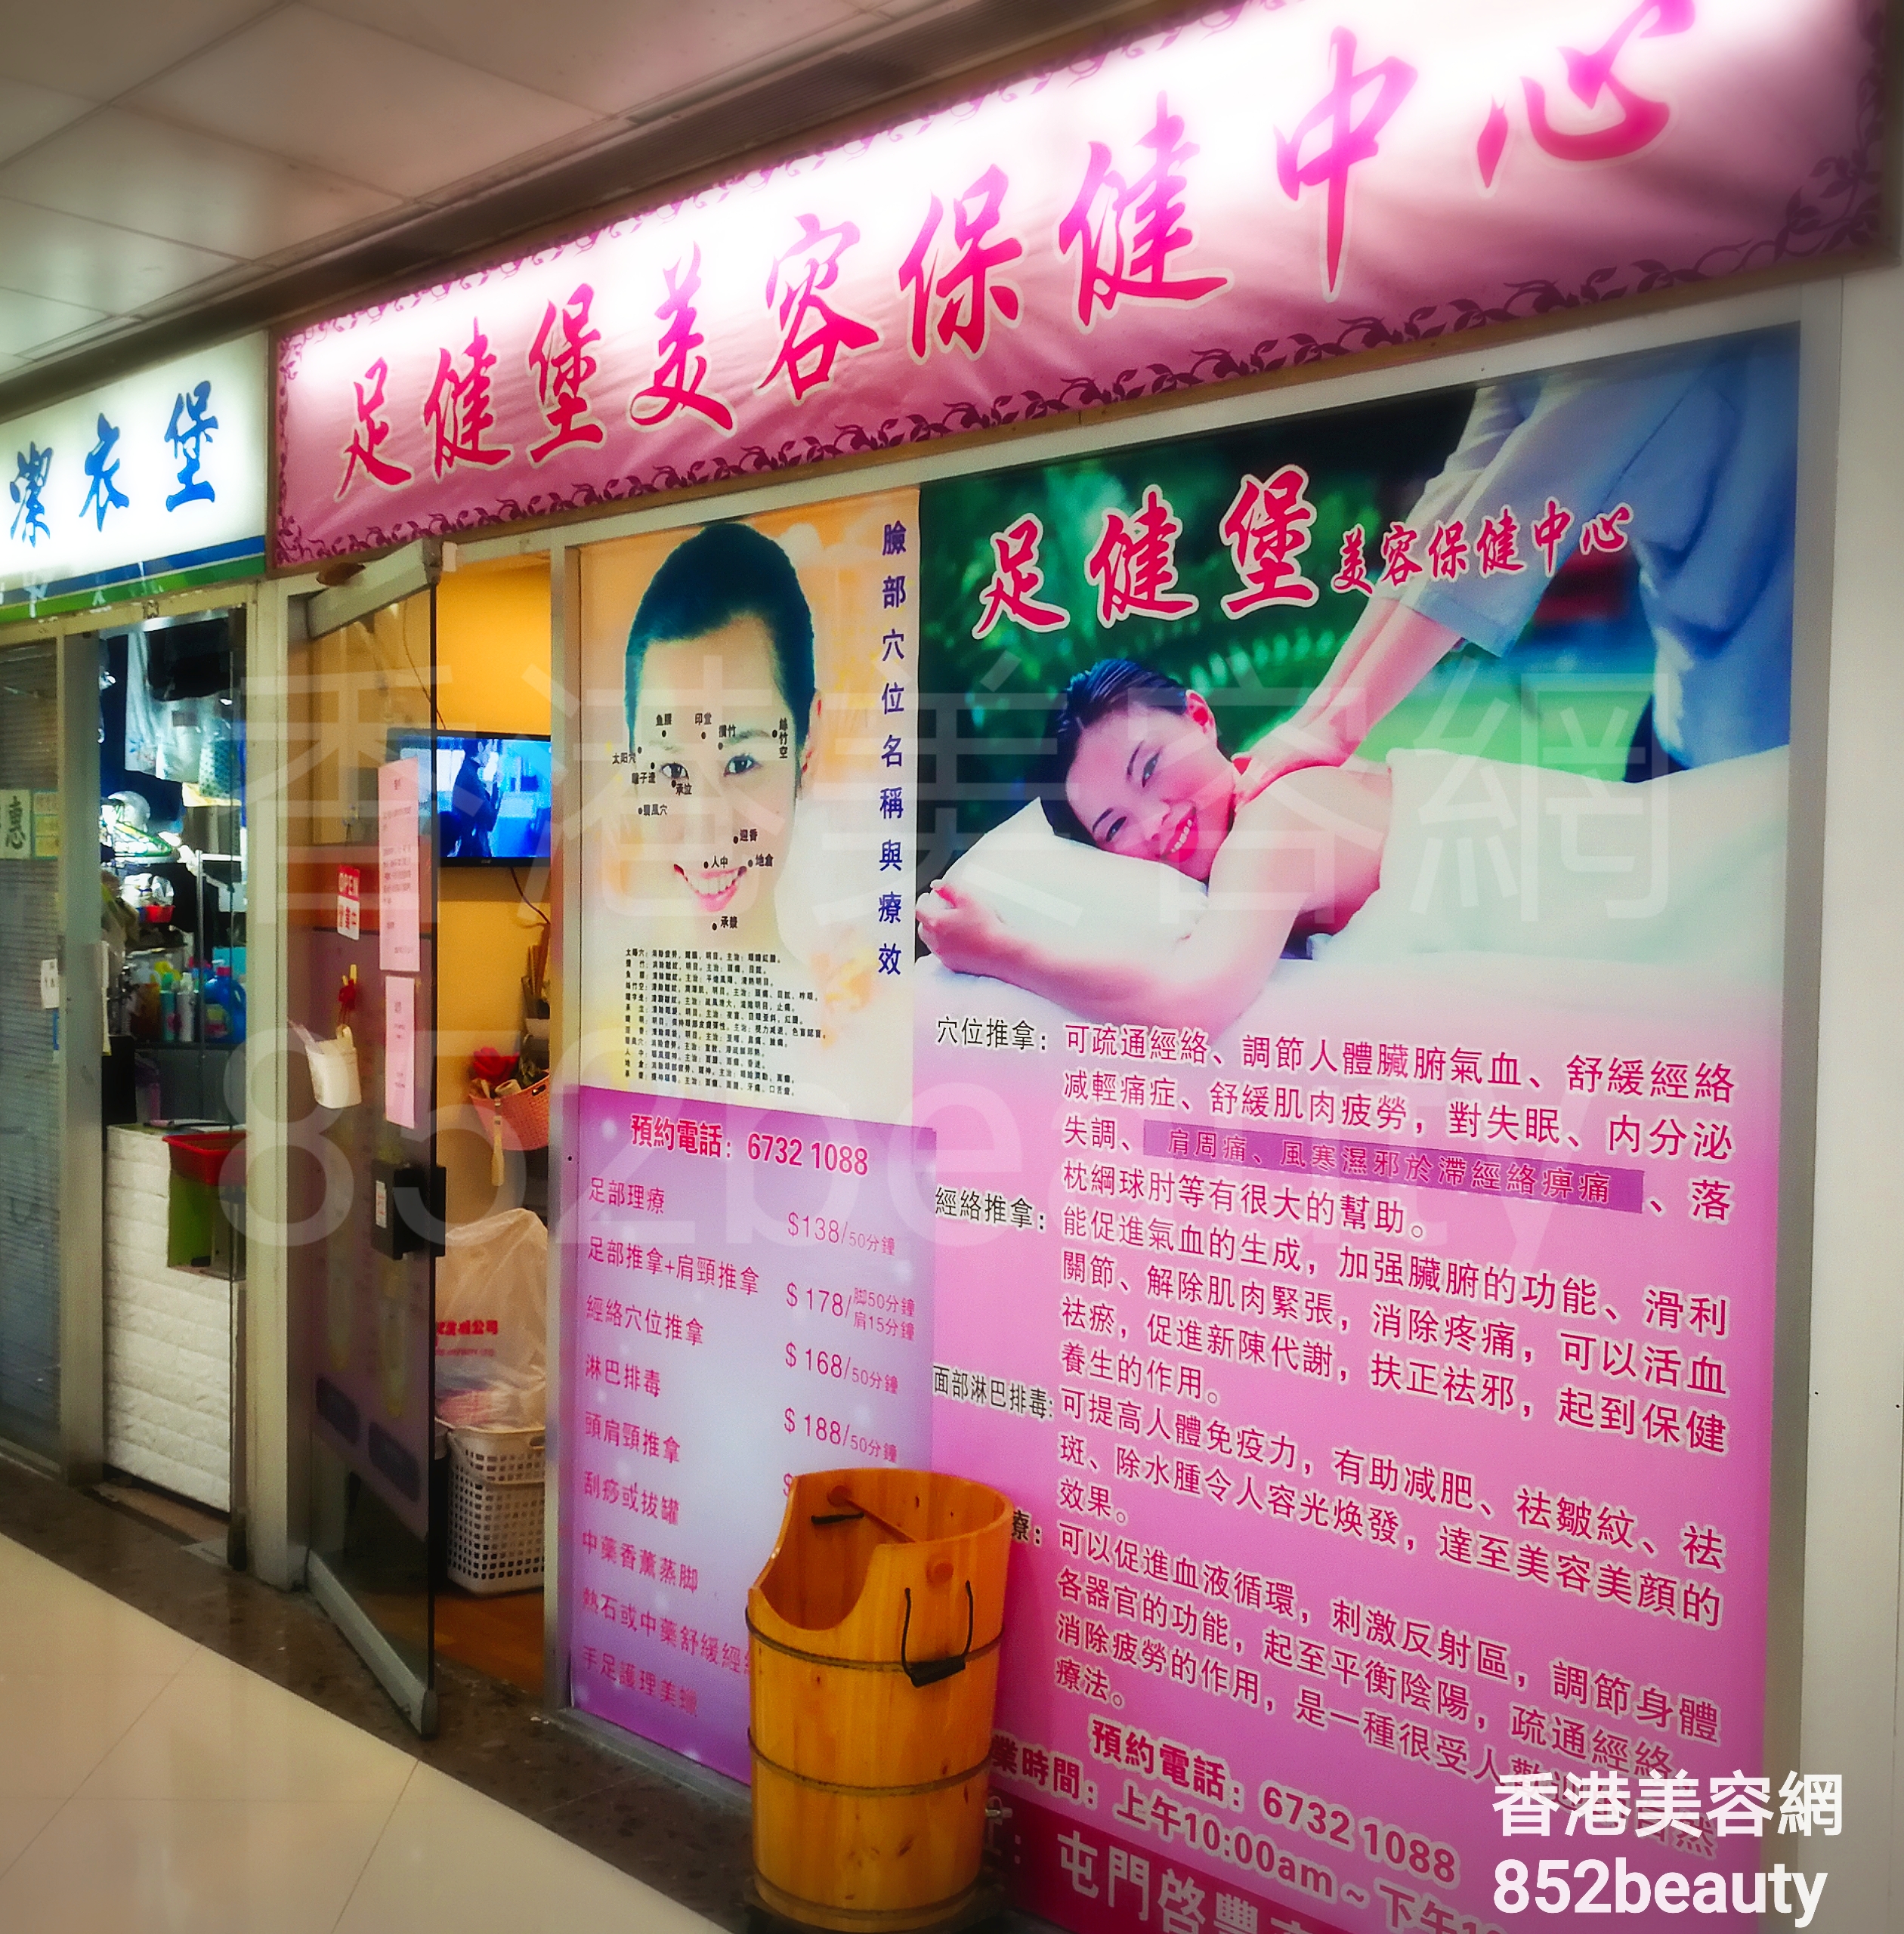 香港美容網 Hong Kong Beauty Salon 美容院 / 美容師: 足健堡 美容保健中心